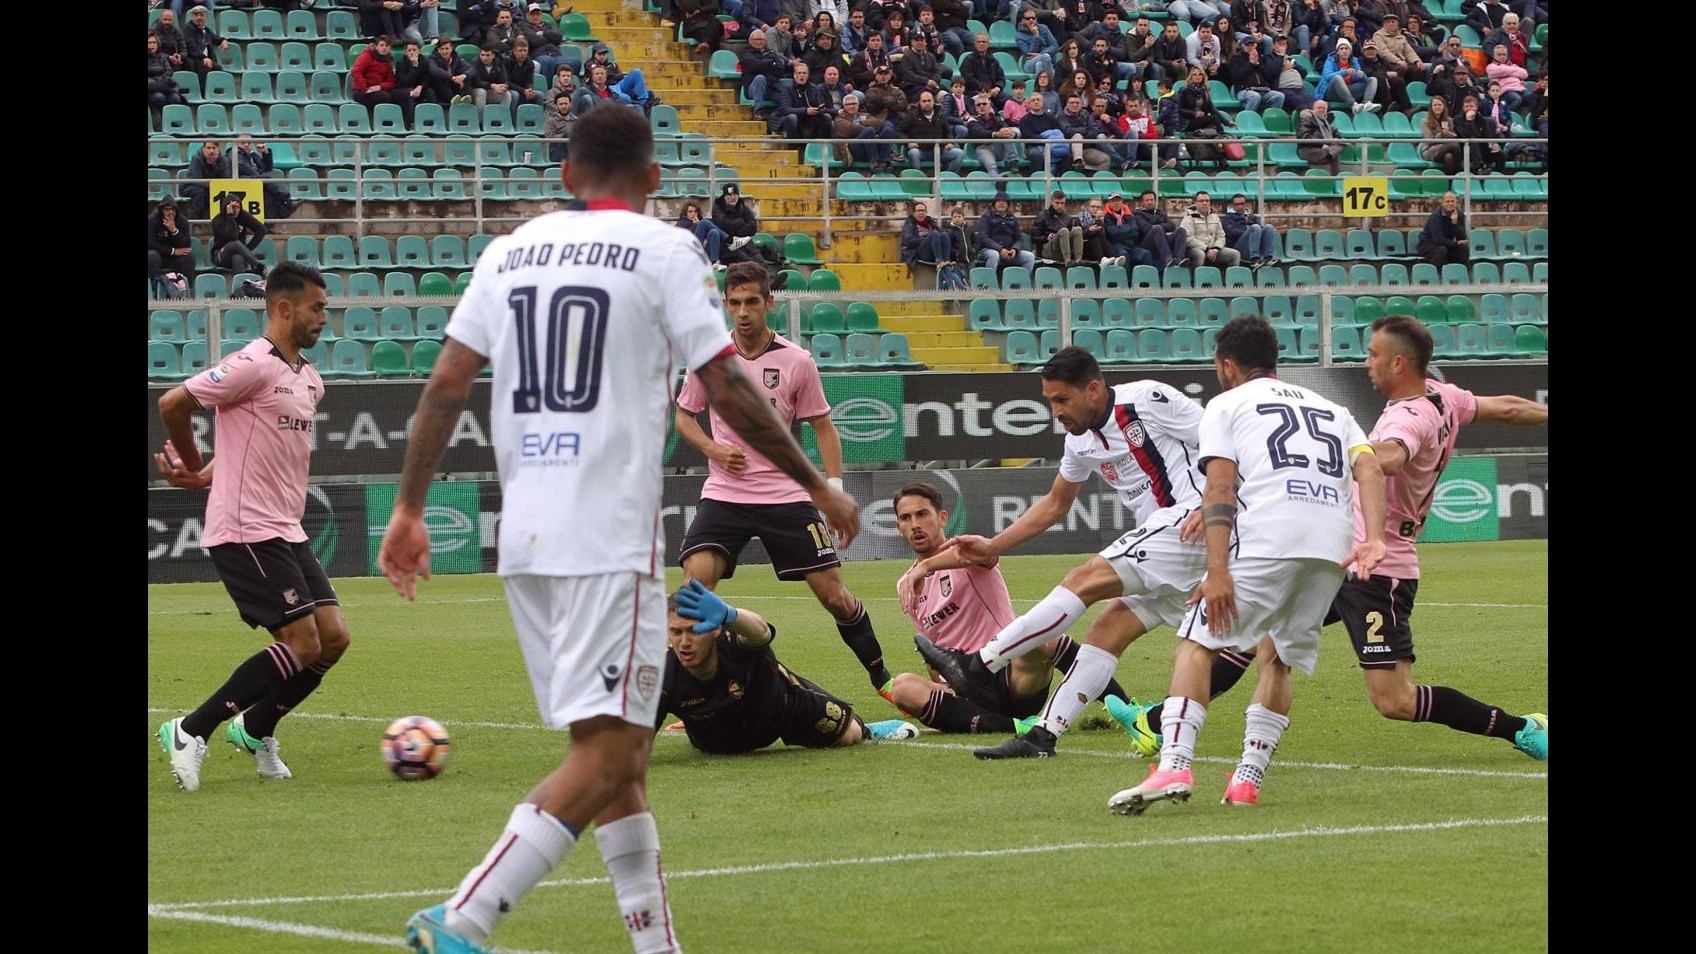 FOTO Serie A, colpo esterno del Cagliari: Palermo ko 3-1